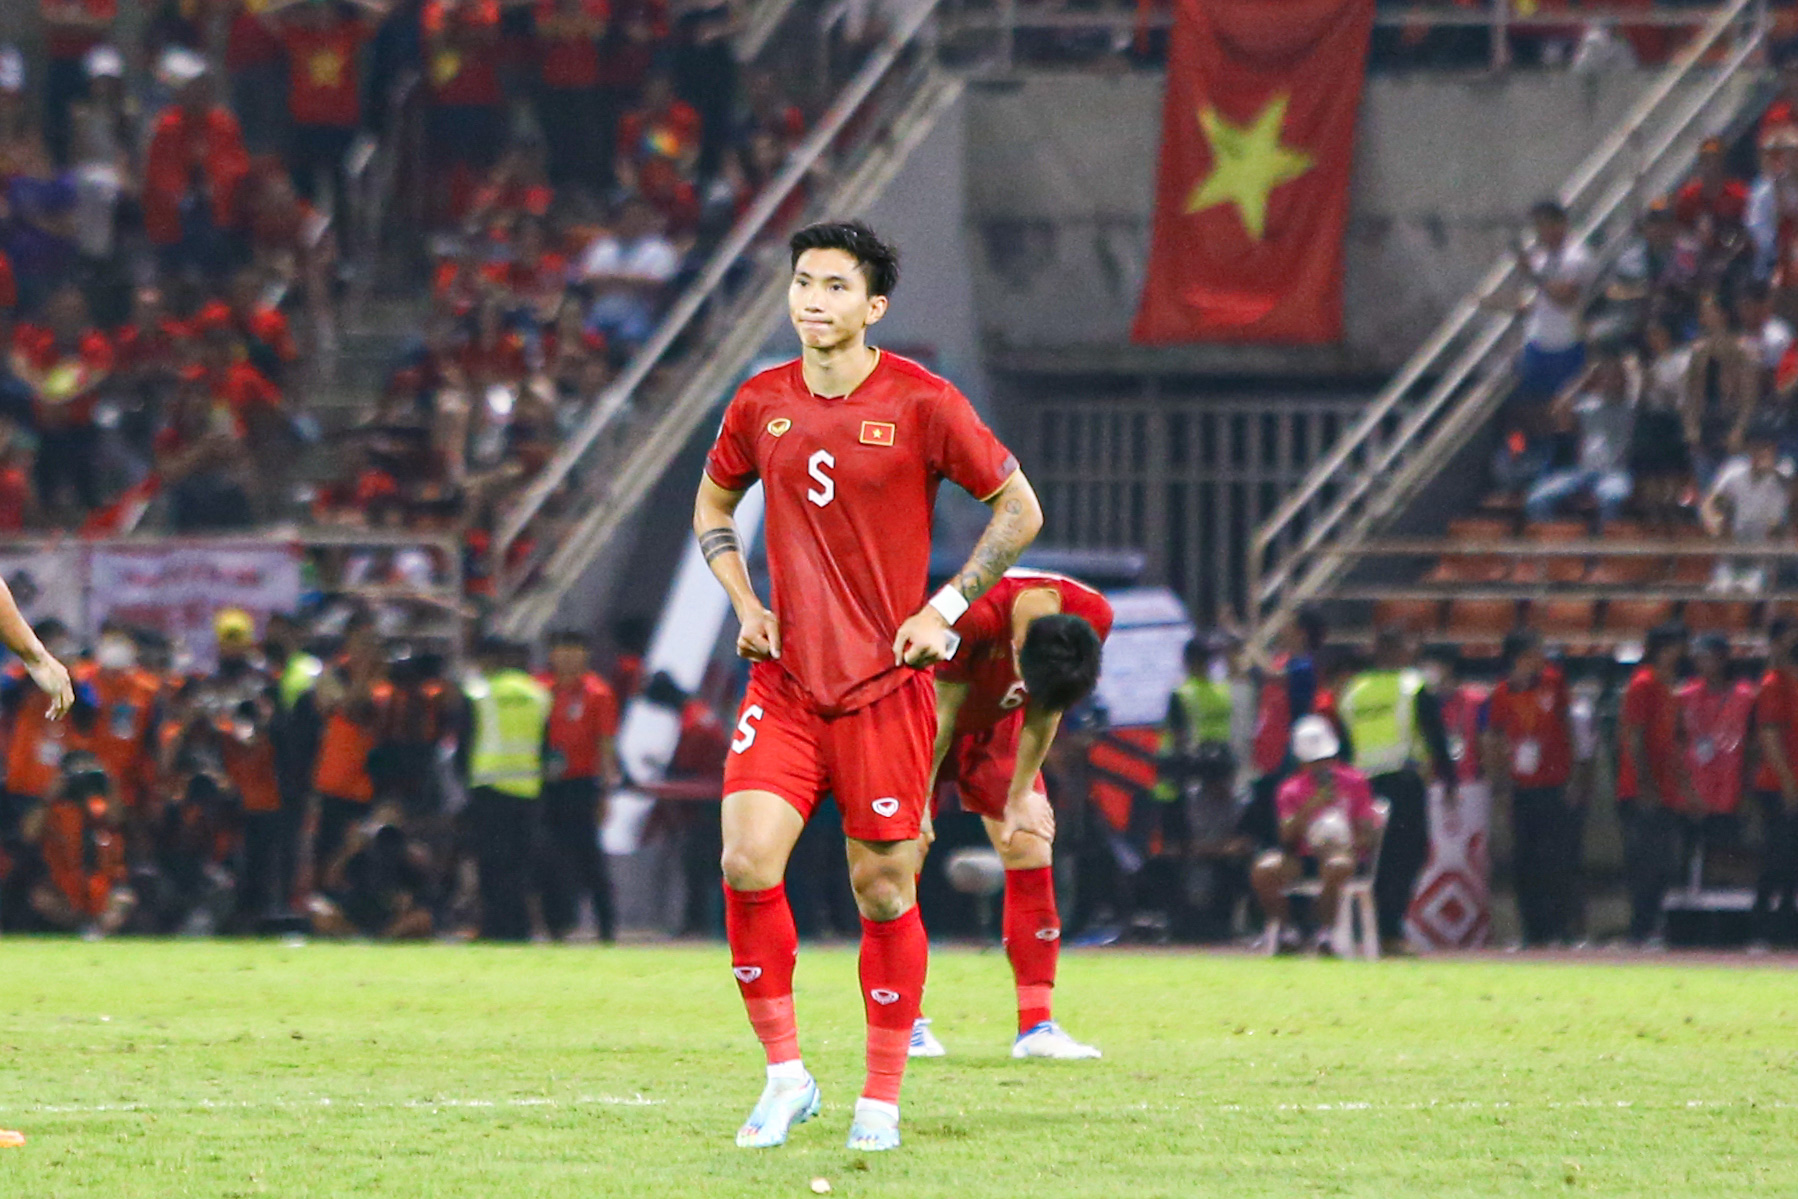 Thất bại 0-1 trước Thái Lan trong trận chung kết lượt về khiến tuyển Việt Nam không thể vô địch AFF Cup 2022 khi thua tổng tỉ số 2-3 sau 2 lượt trận.